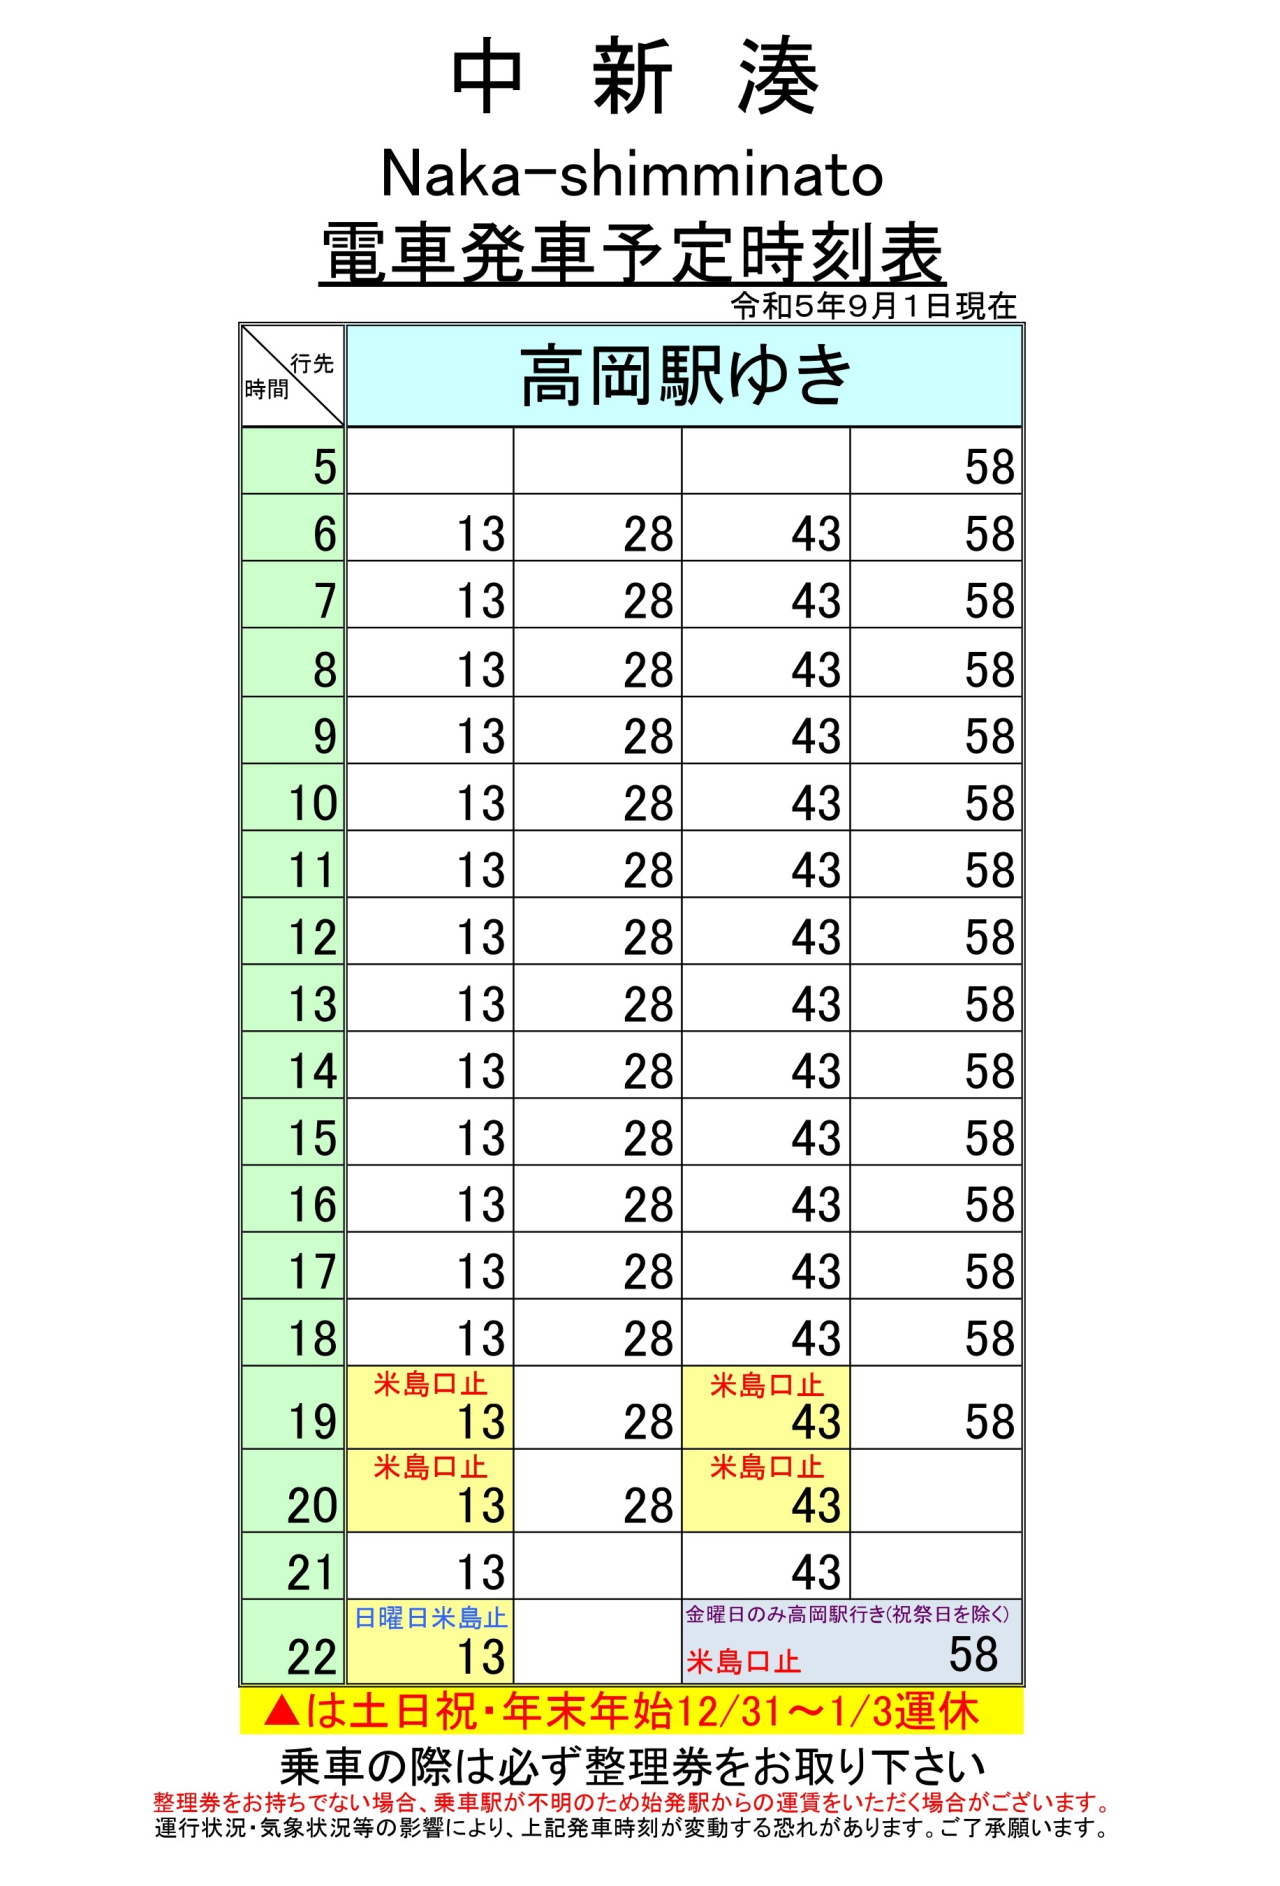 最新5.5.1改正各駅時刻表(中新湊上り)_page-0001 (1)